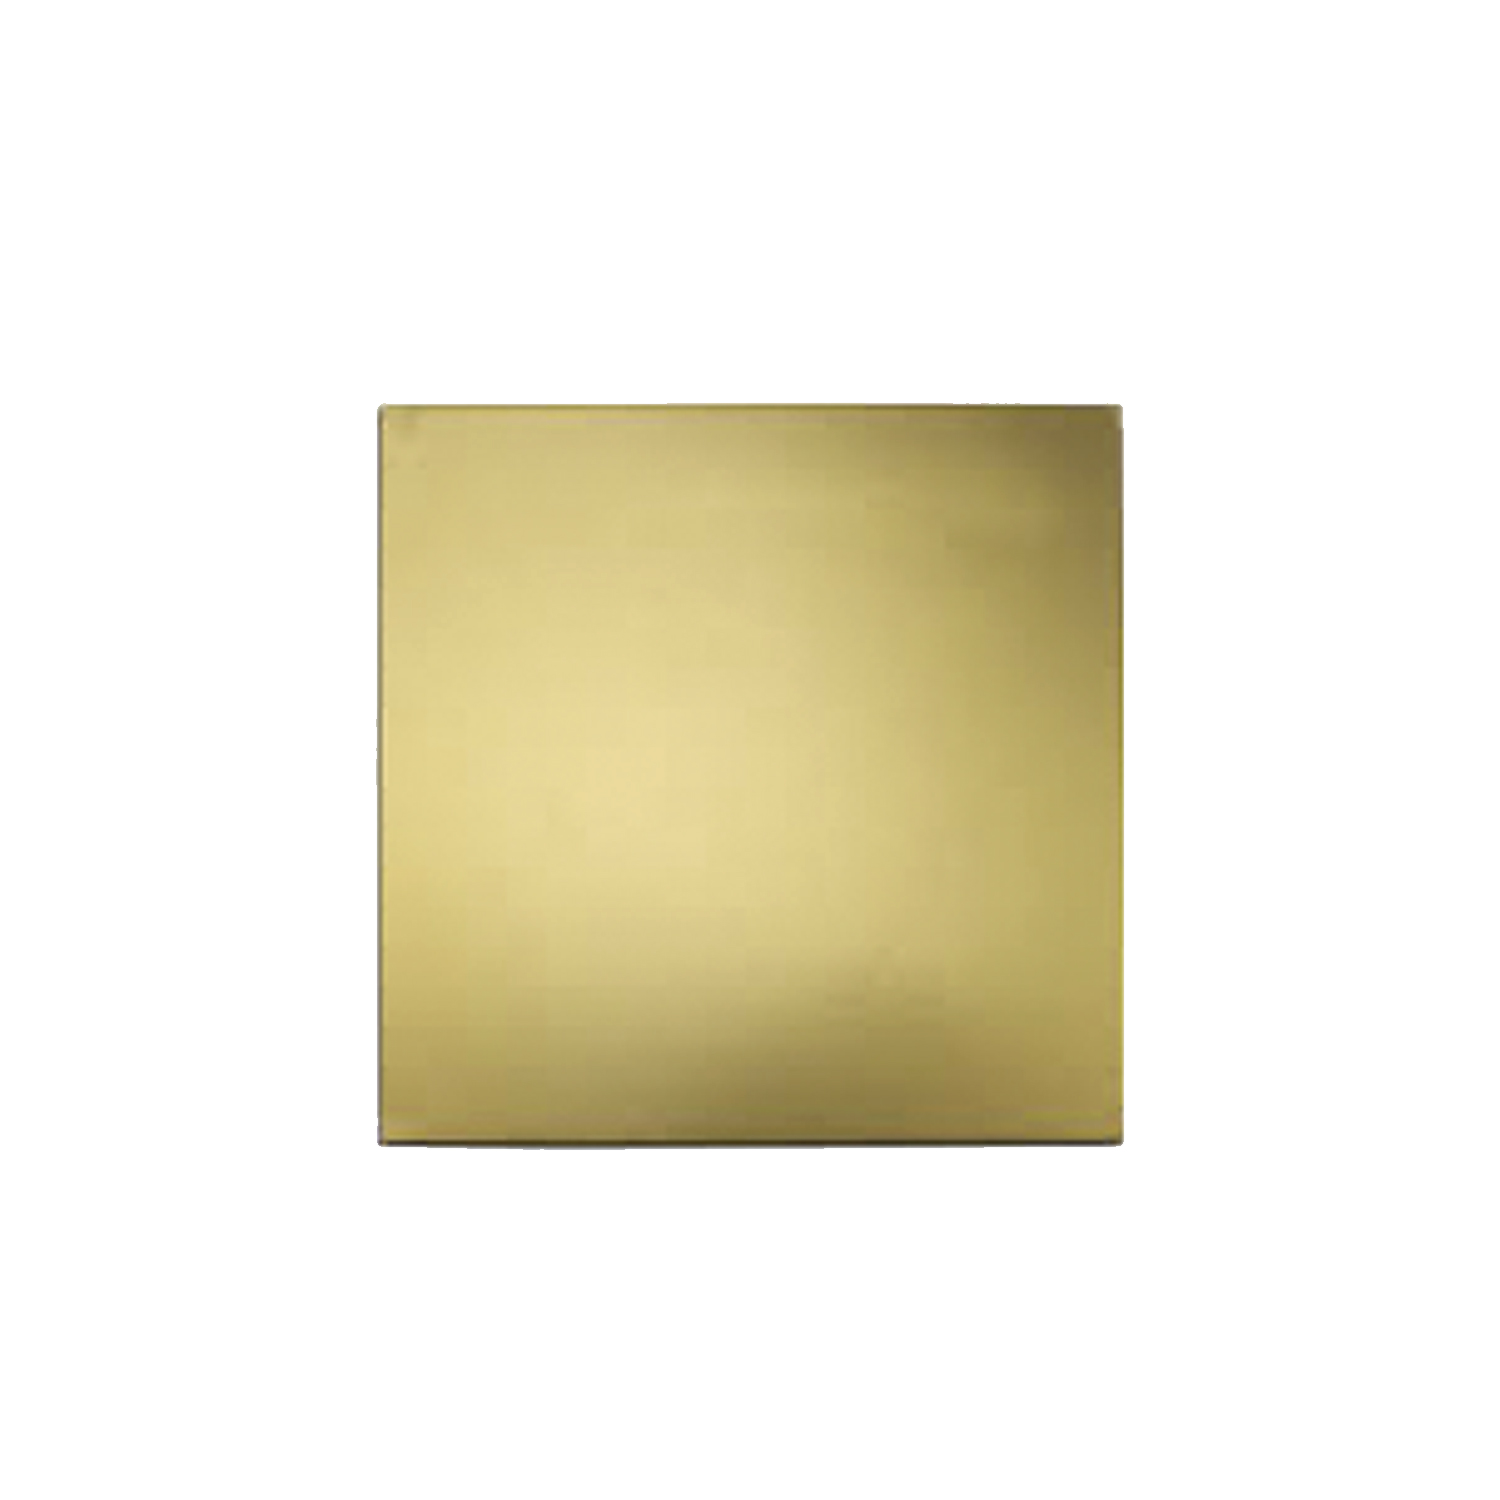 Cake Board (9 Inch), Gold Colour Square Shape